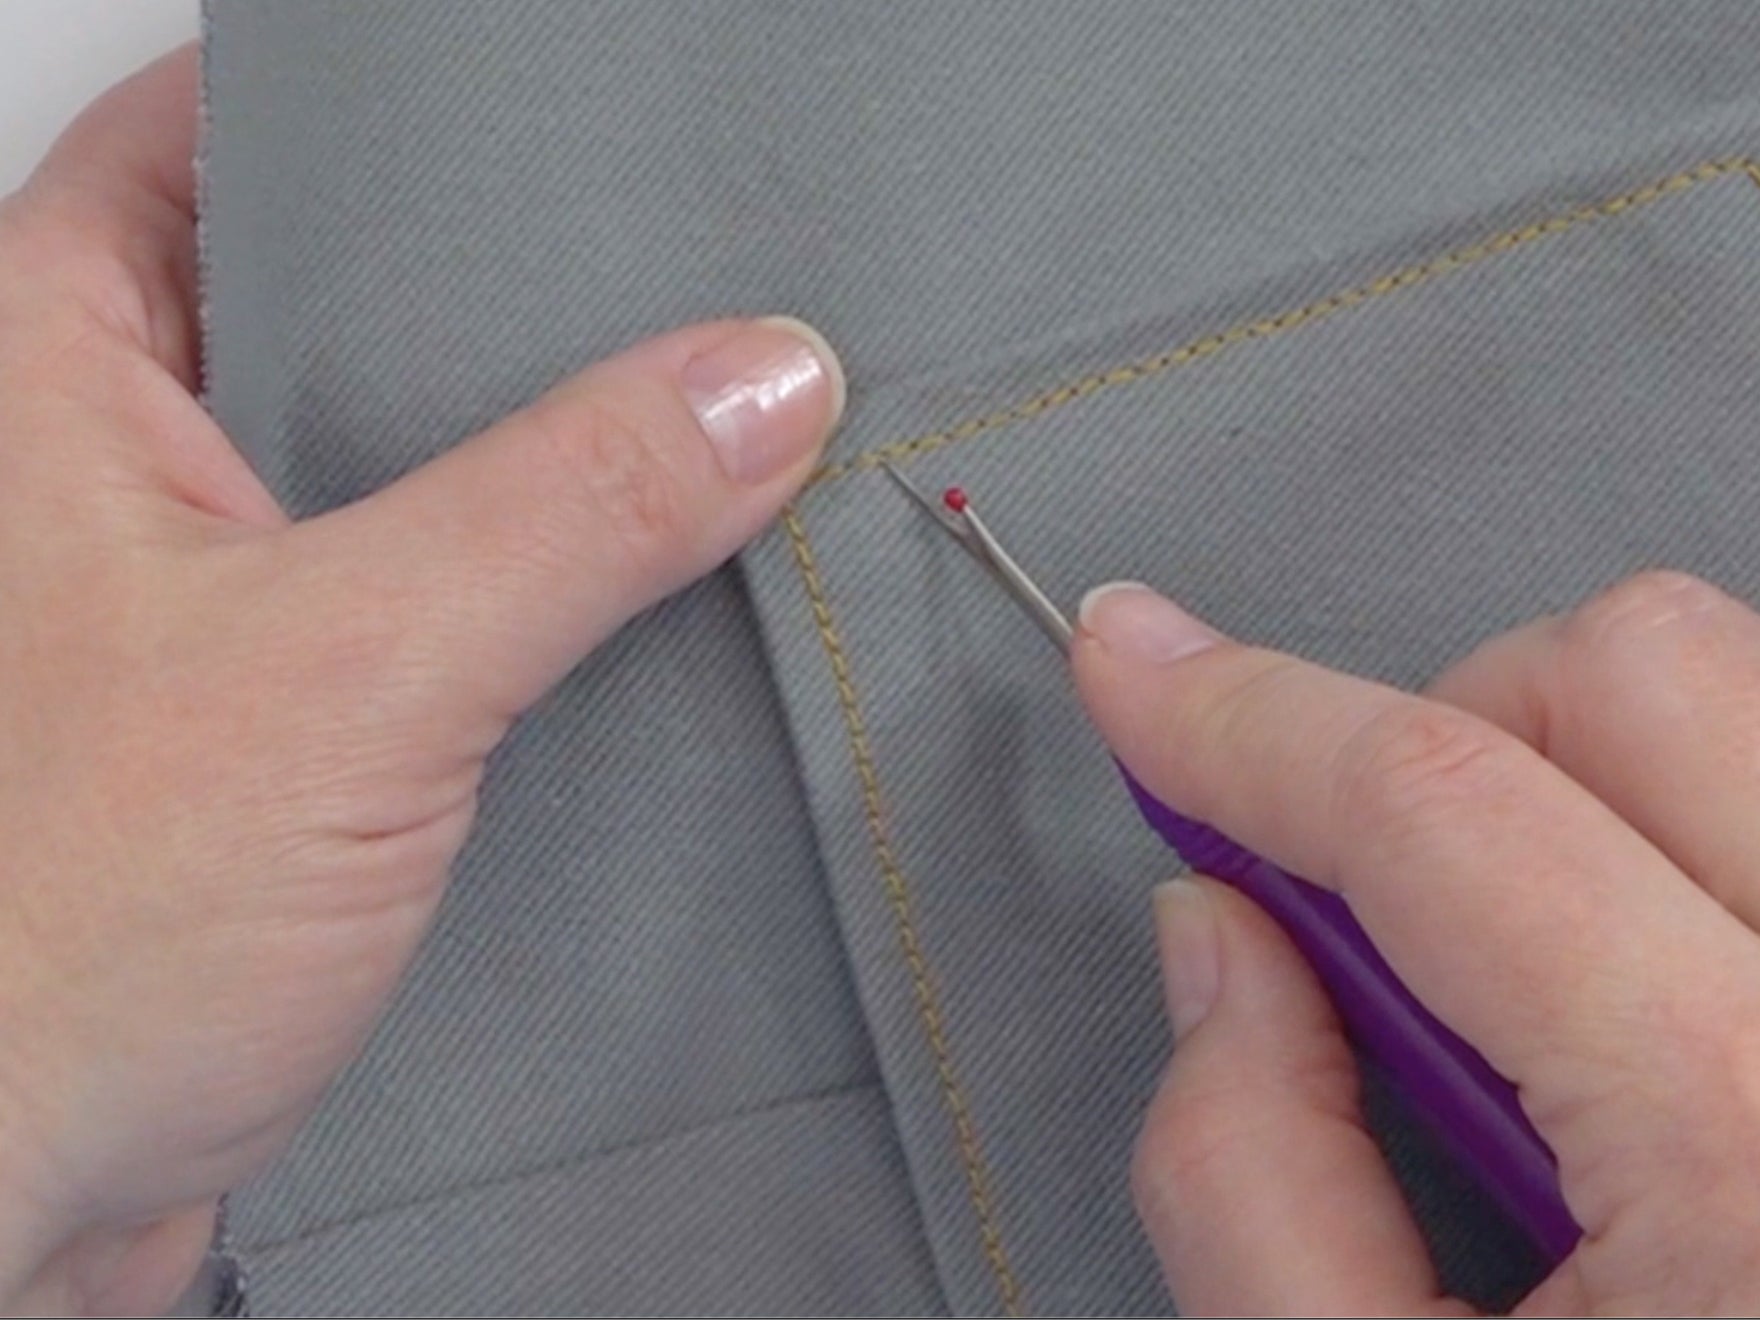 Liquid Stitch Fabric Mender - 1.69 oz. - WAWAK Sewing Supplies